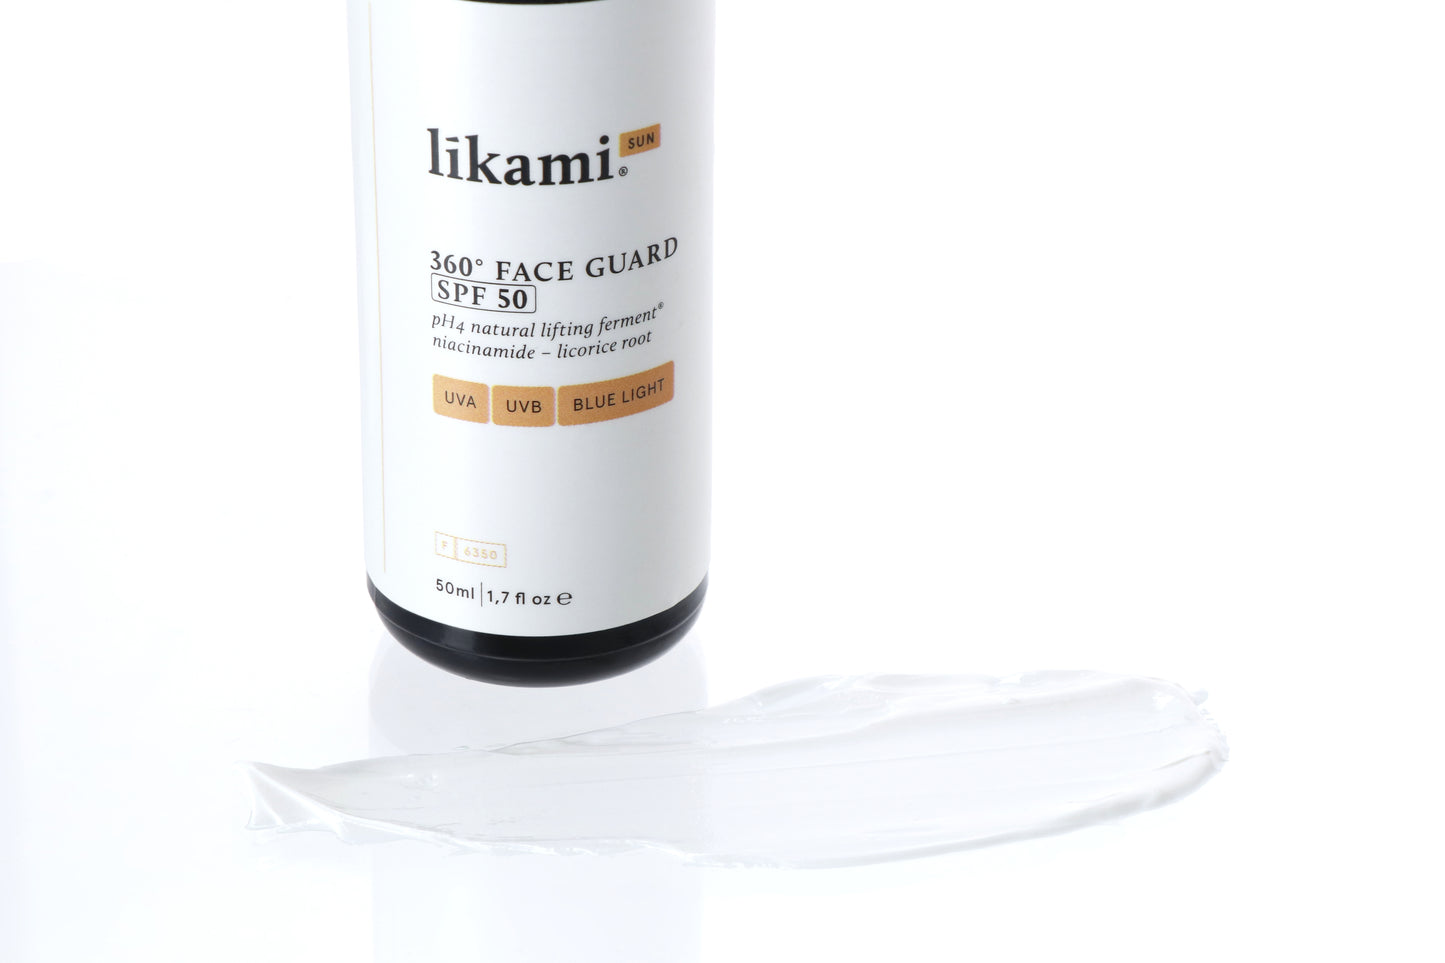 Likami - 360° FACE GUARD SPF50 (50ml)